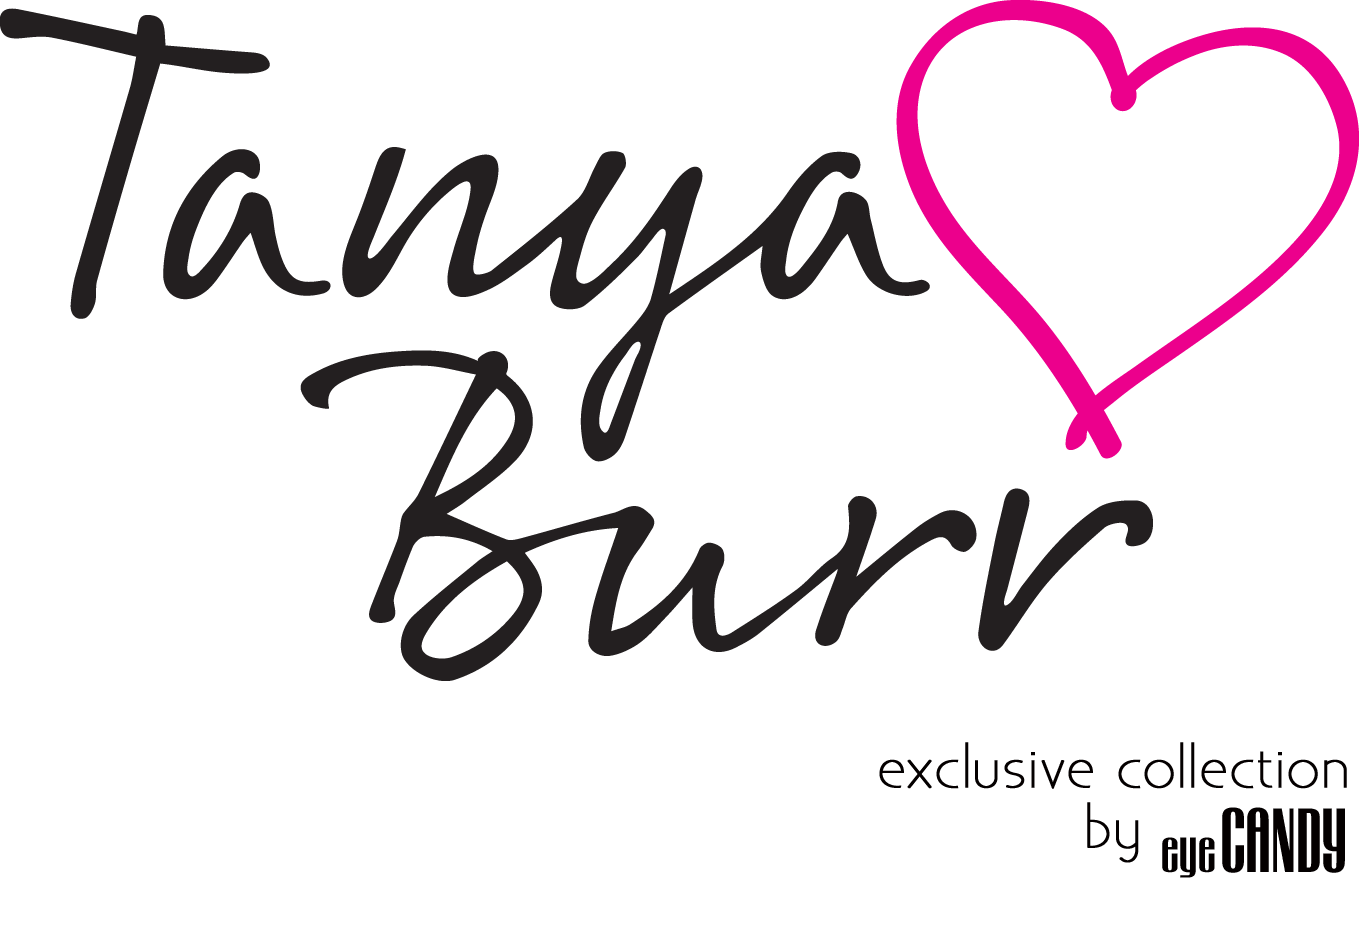 Tanya Burr